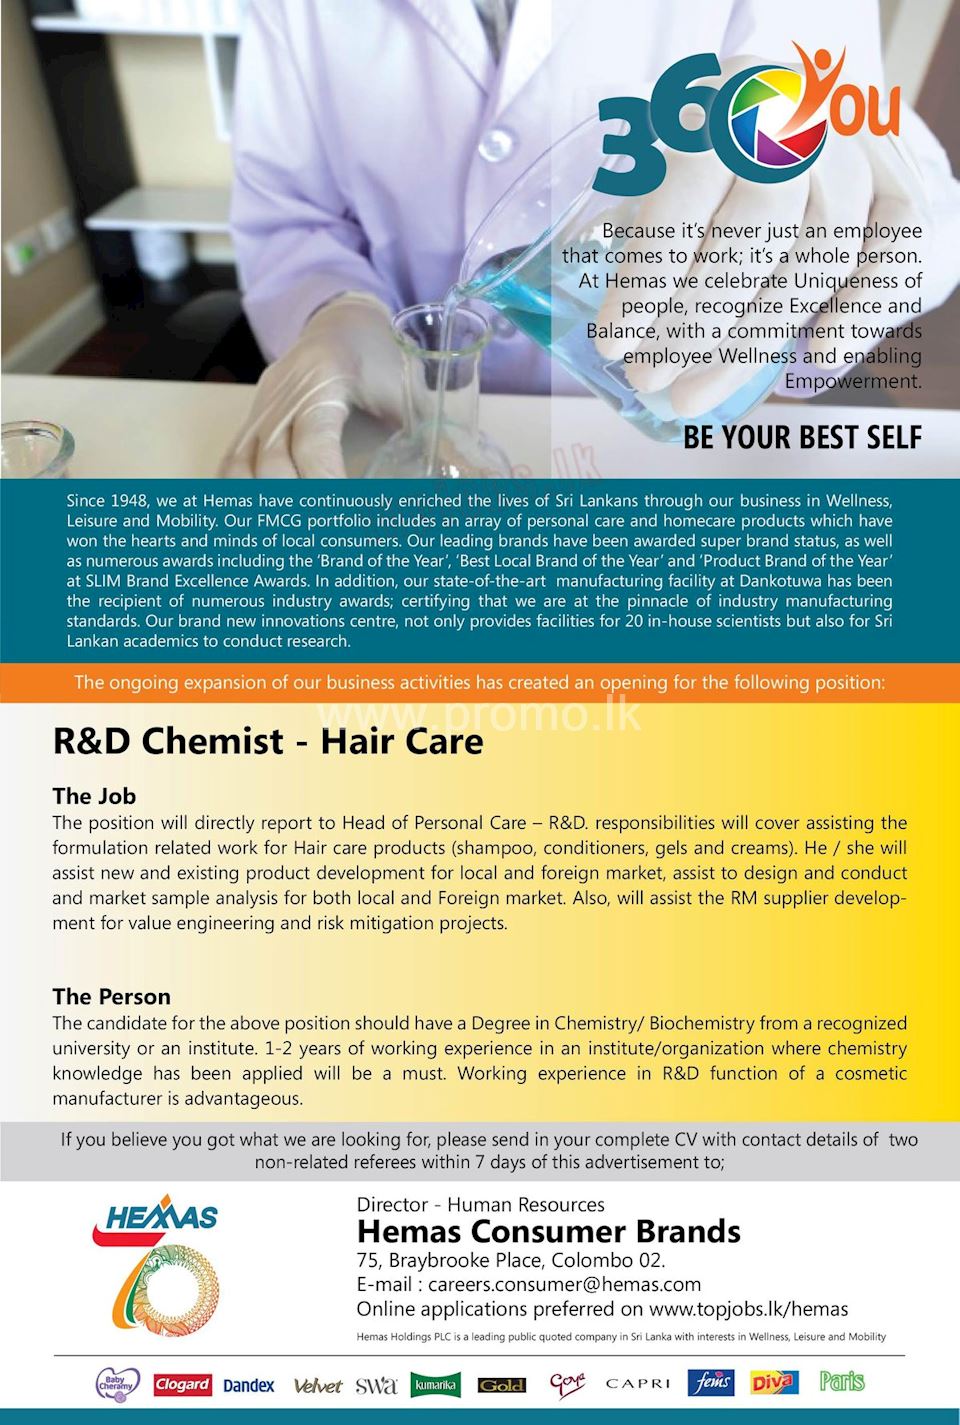 R&D Chemist - Hair Care